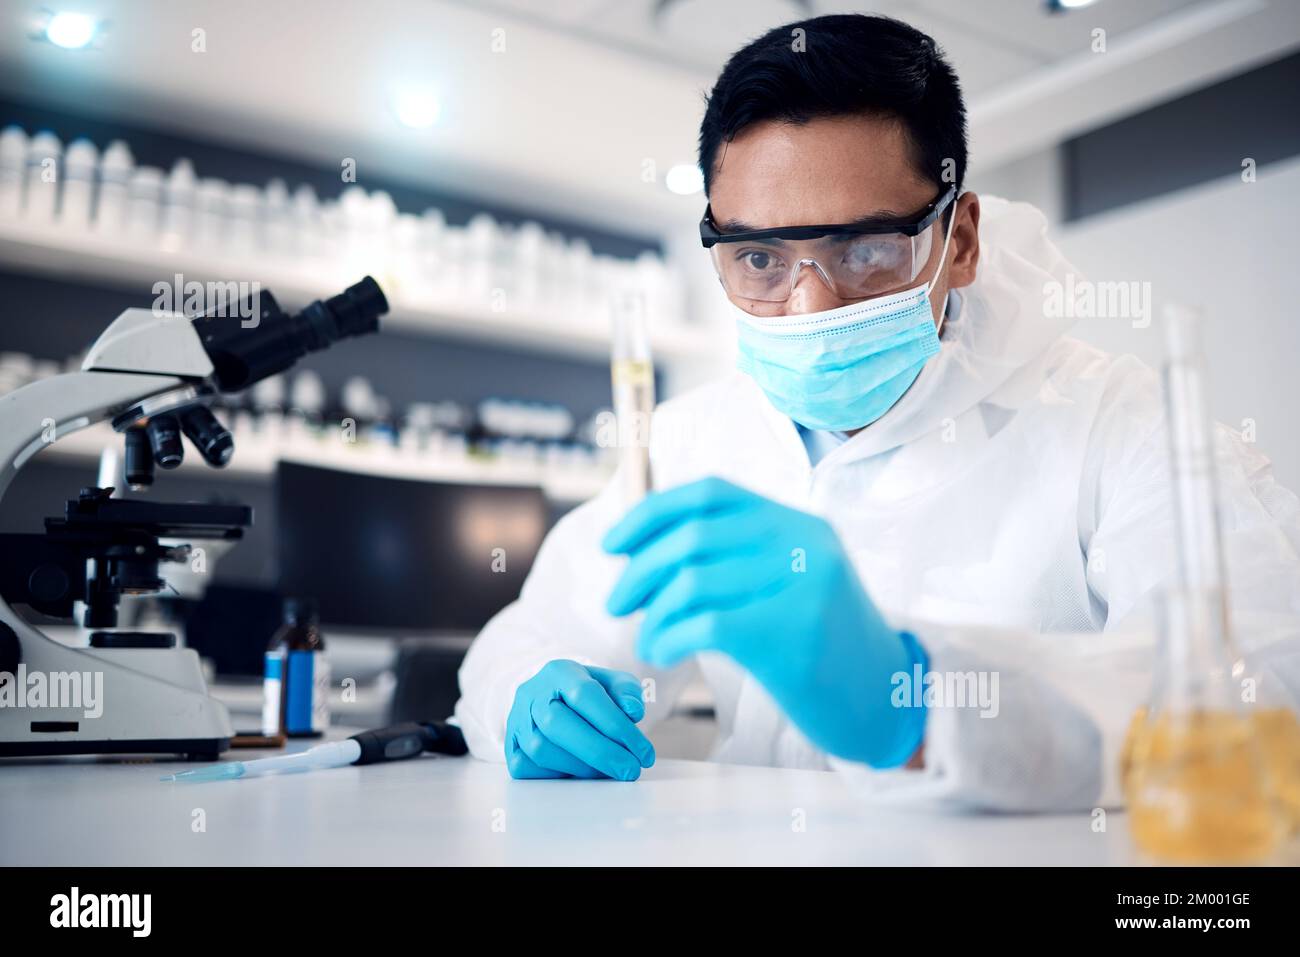 Wissenschaftler, Forschung und Mensch arbeiten im Labor für wissenschaftliche Innovation in Chemie oder Physik, Mikroskop und Reagenzgläser für wissenschaftliche Experimente. Gesichtsmaske Stockfoto